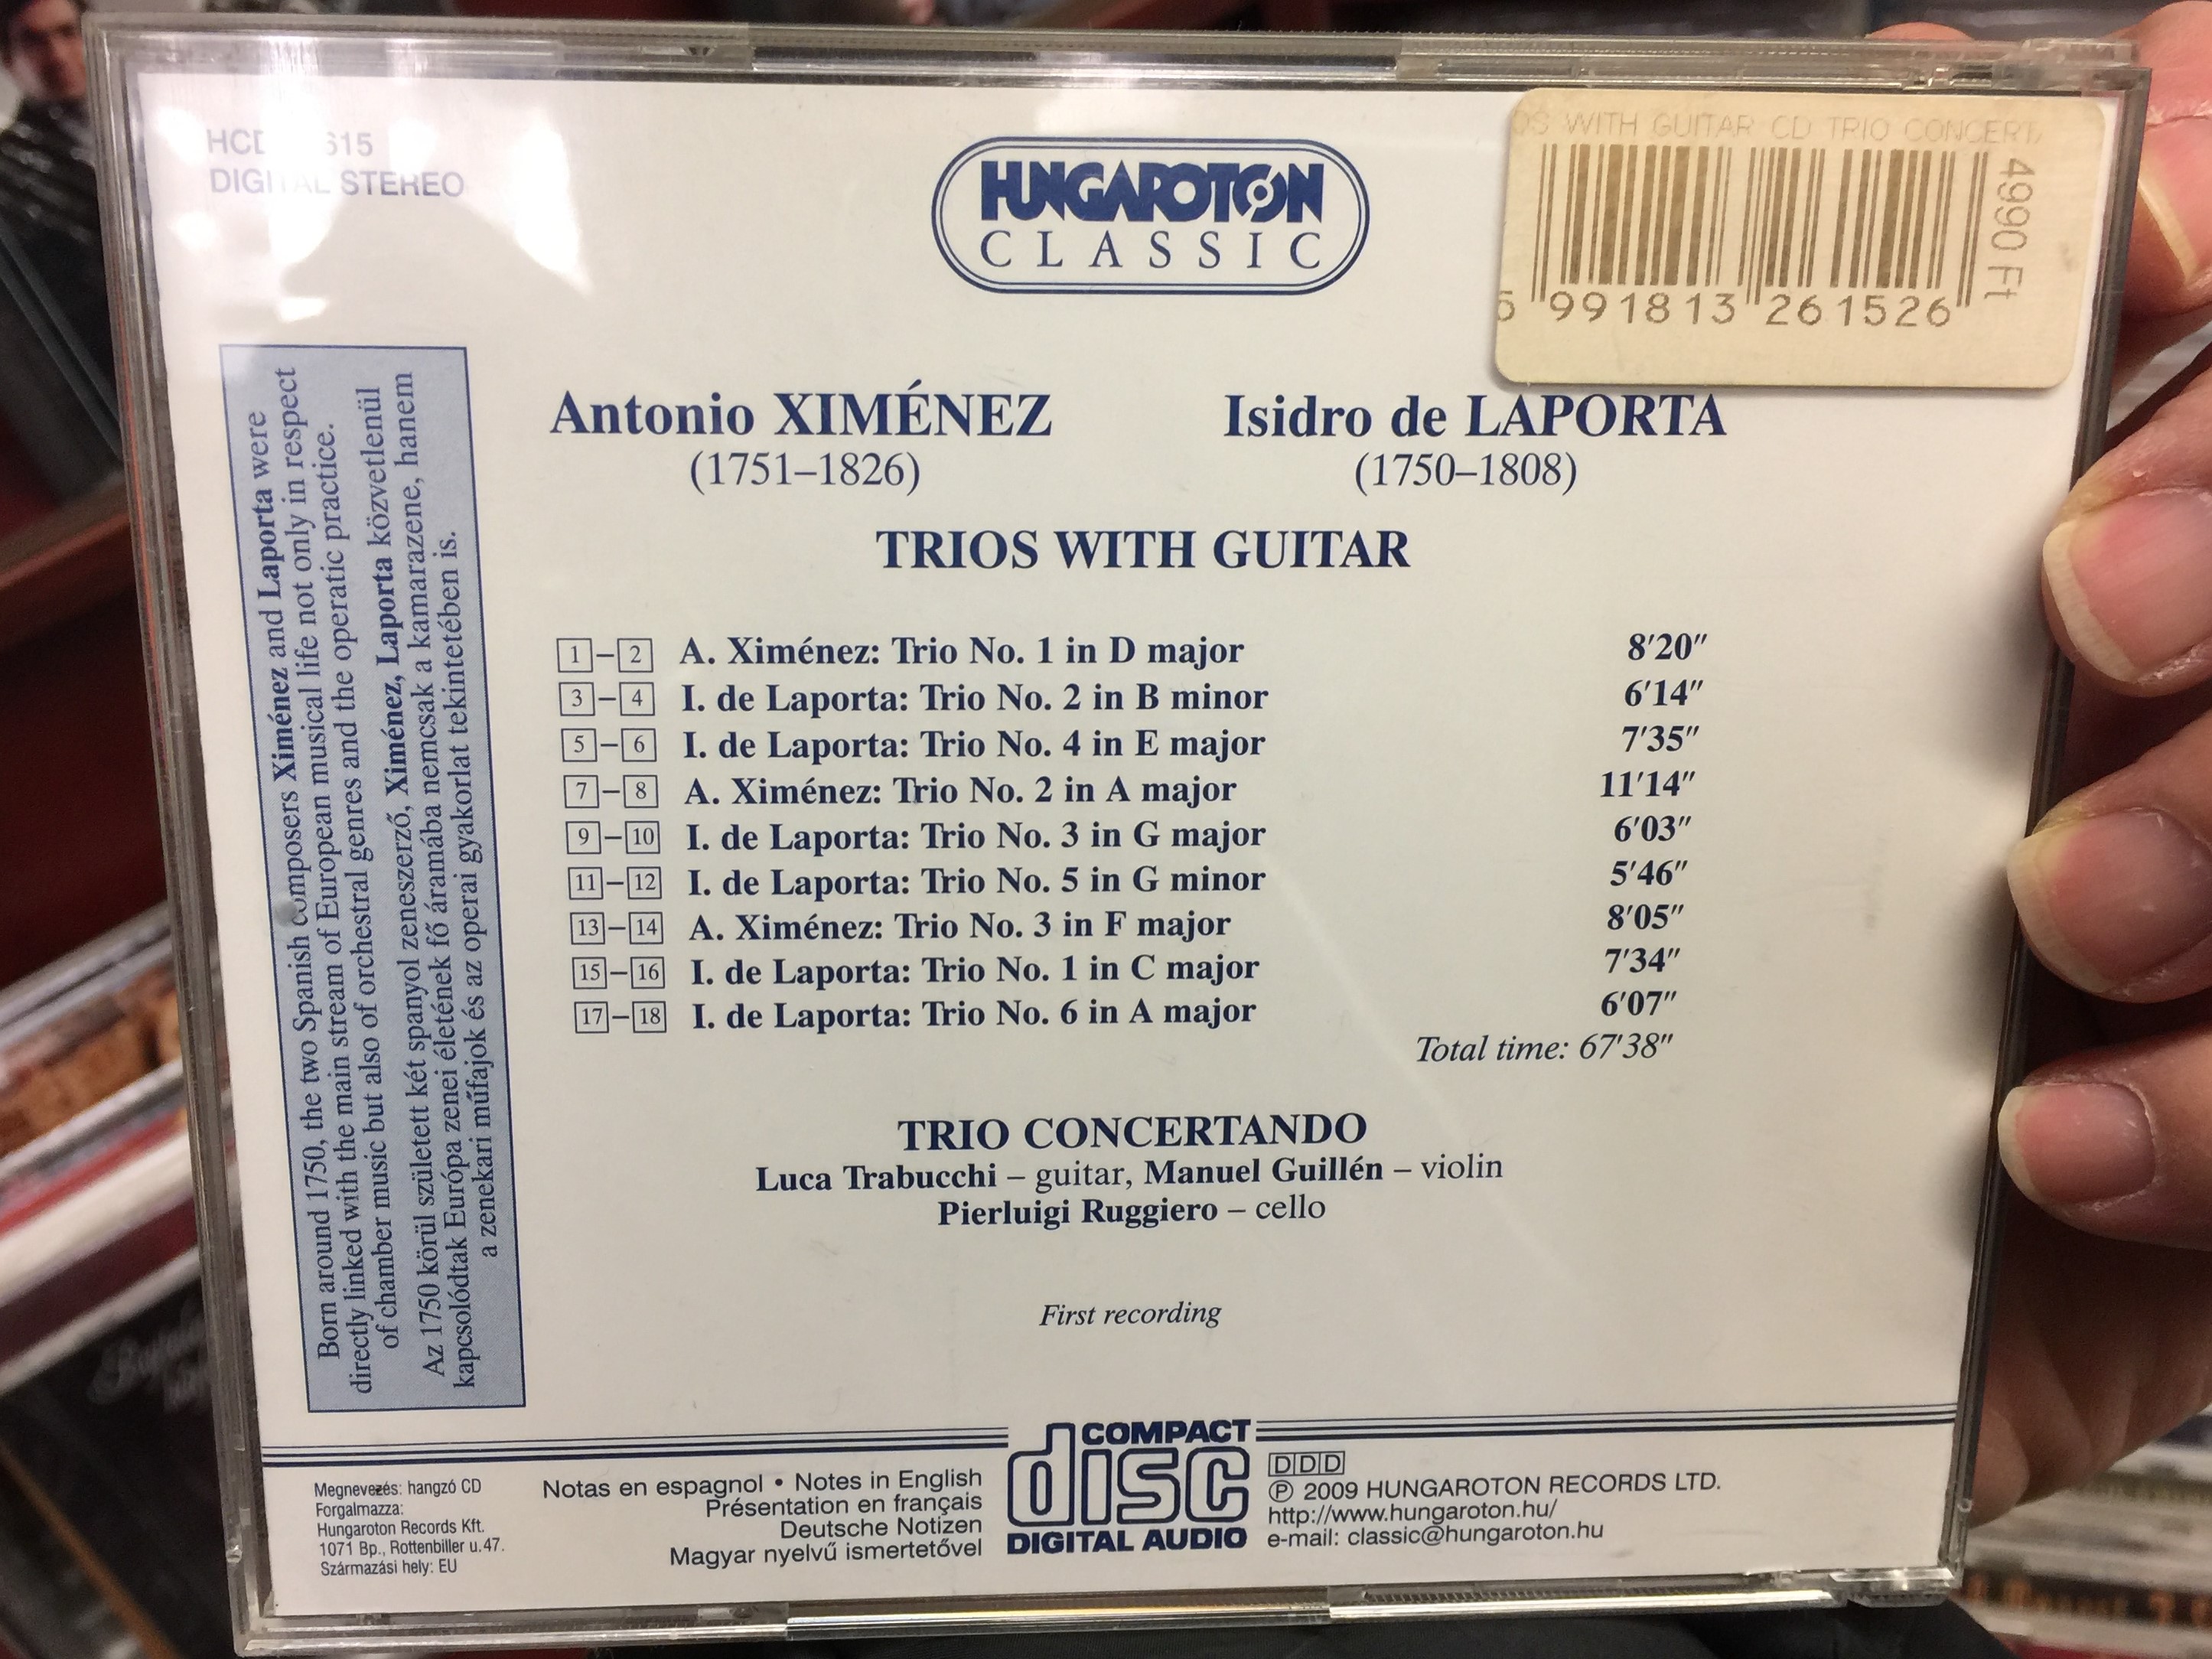 antonio-xim-nez-isidro-de-laporta-trios-with-guitar-trio-concertanno-manuel-guillen-violin-luca-trabucchi-guitar-pierluigi-ruggiero-cello-hungaroton-classic-audio-cd-2009-stereo-h.jpg